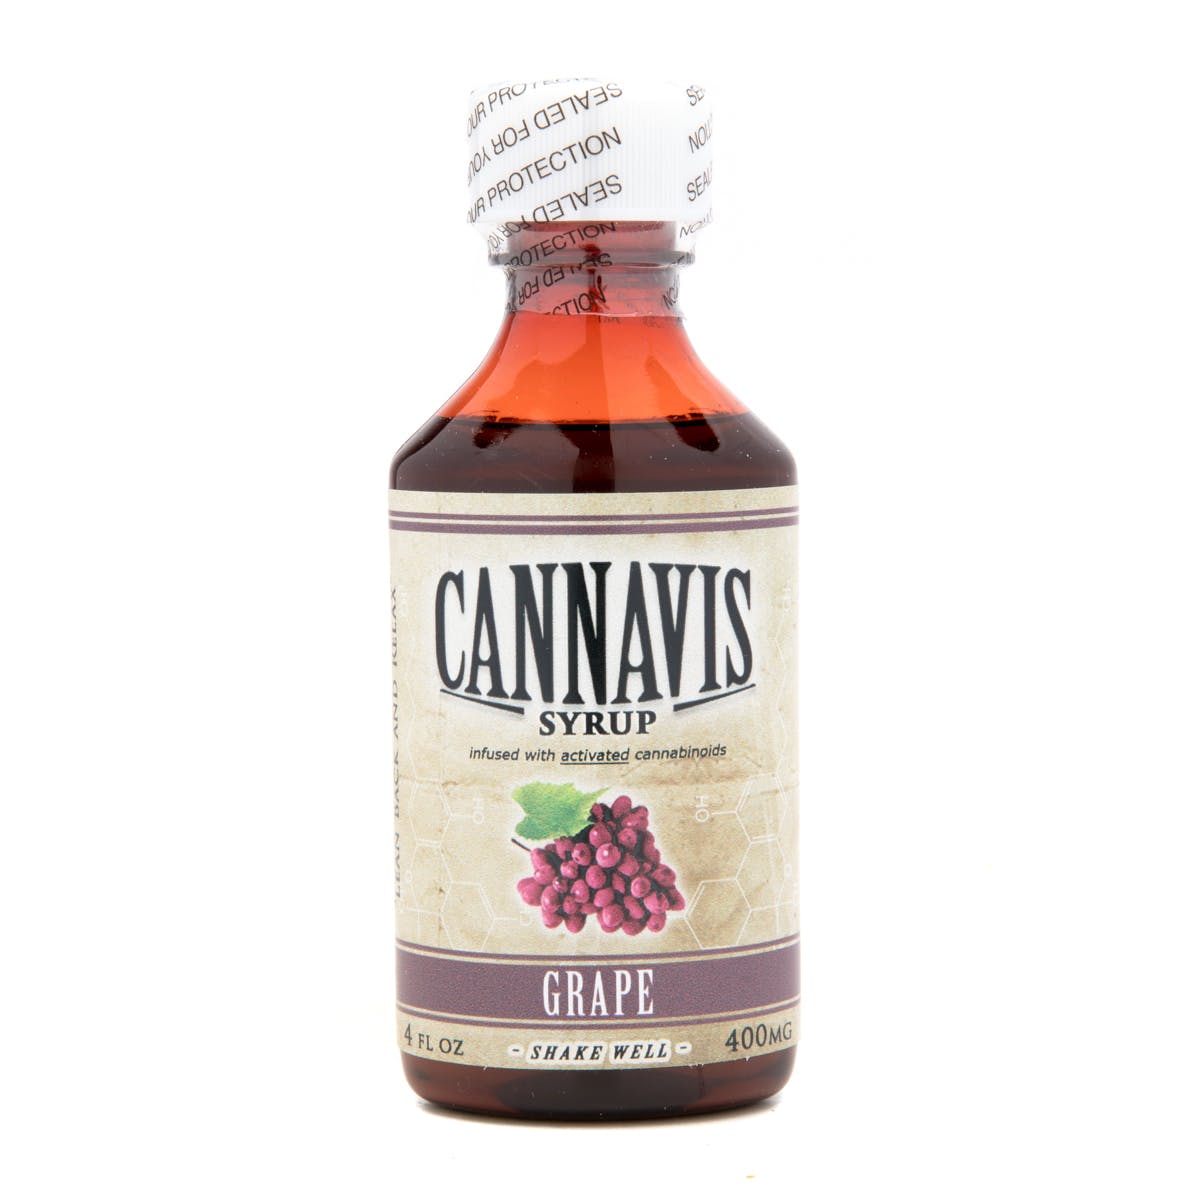 edible-cannavis-syrup-2c-grape-400mg